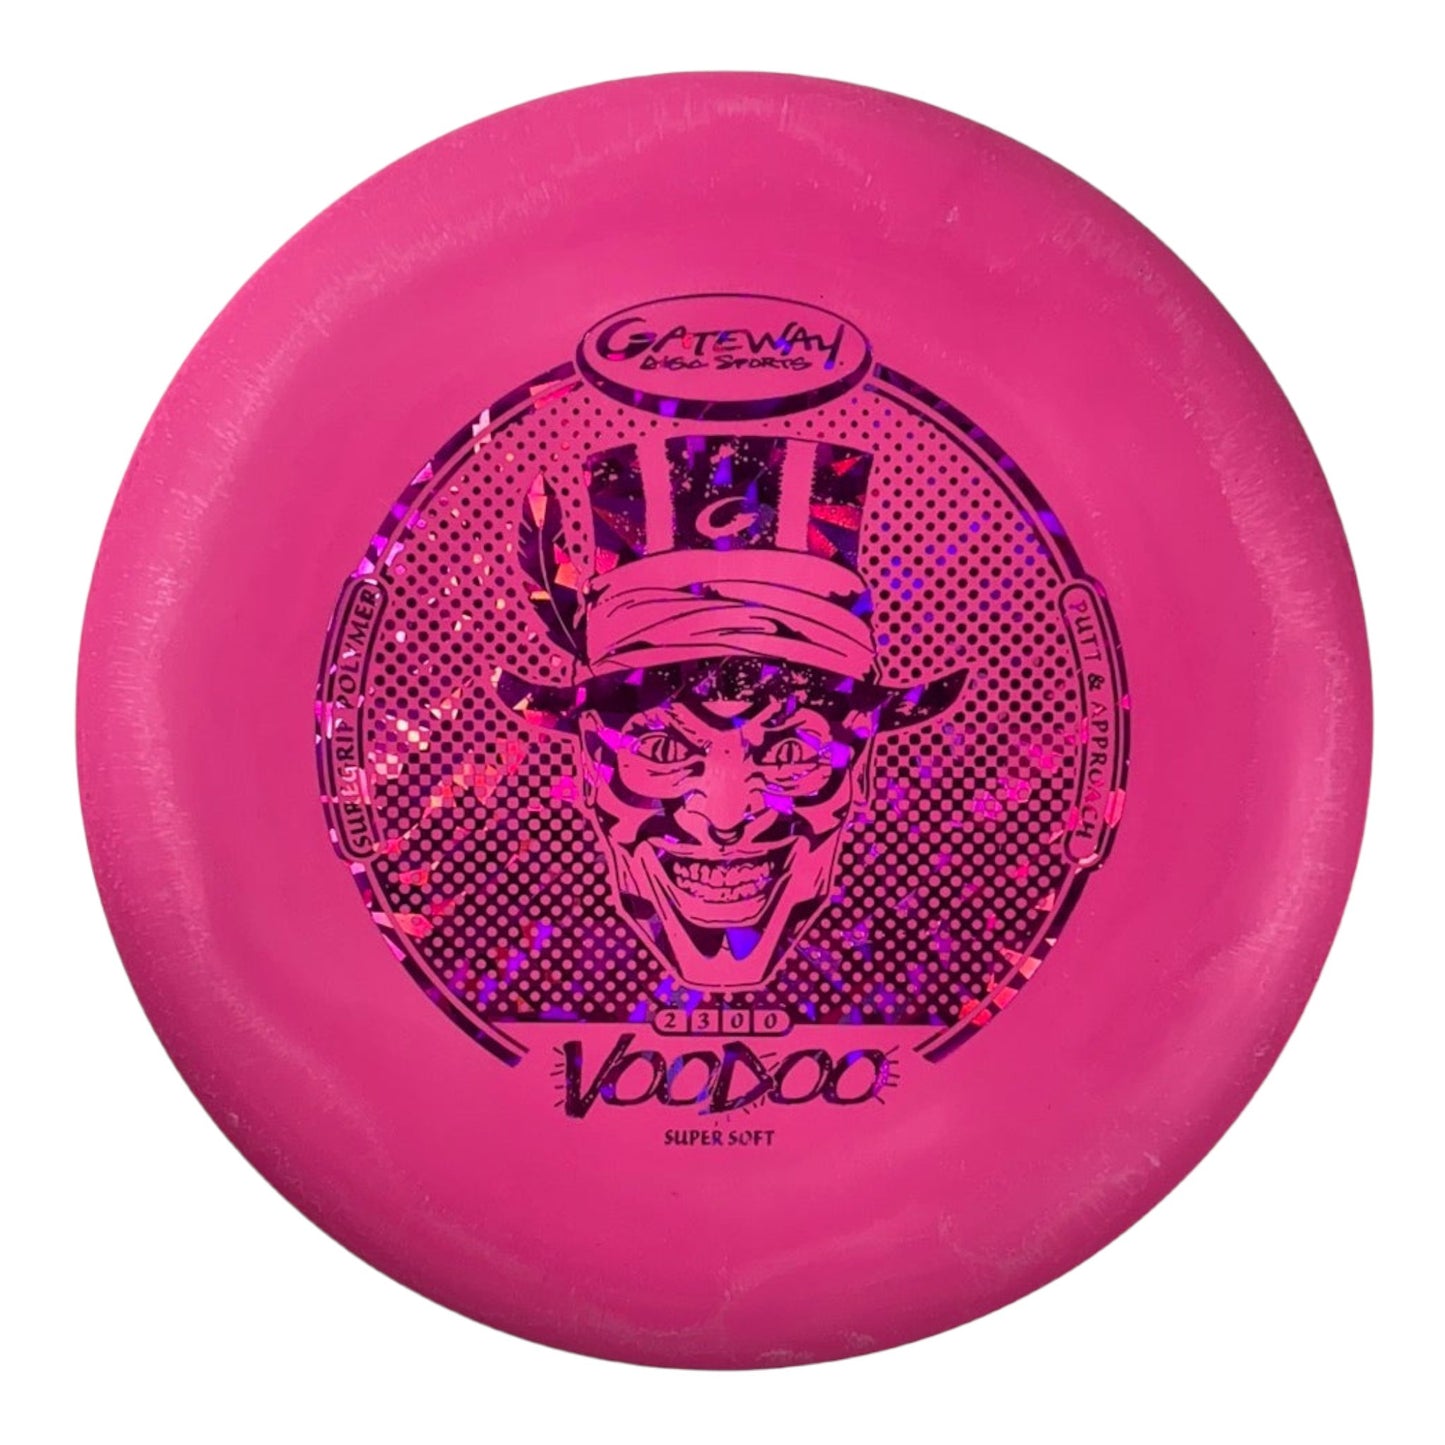 Gateway Disc Sports Voodoo | Super Soft (SS) | Pink/Pink 174g Disc Golf